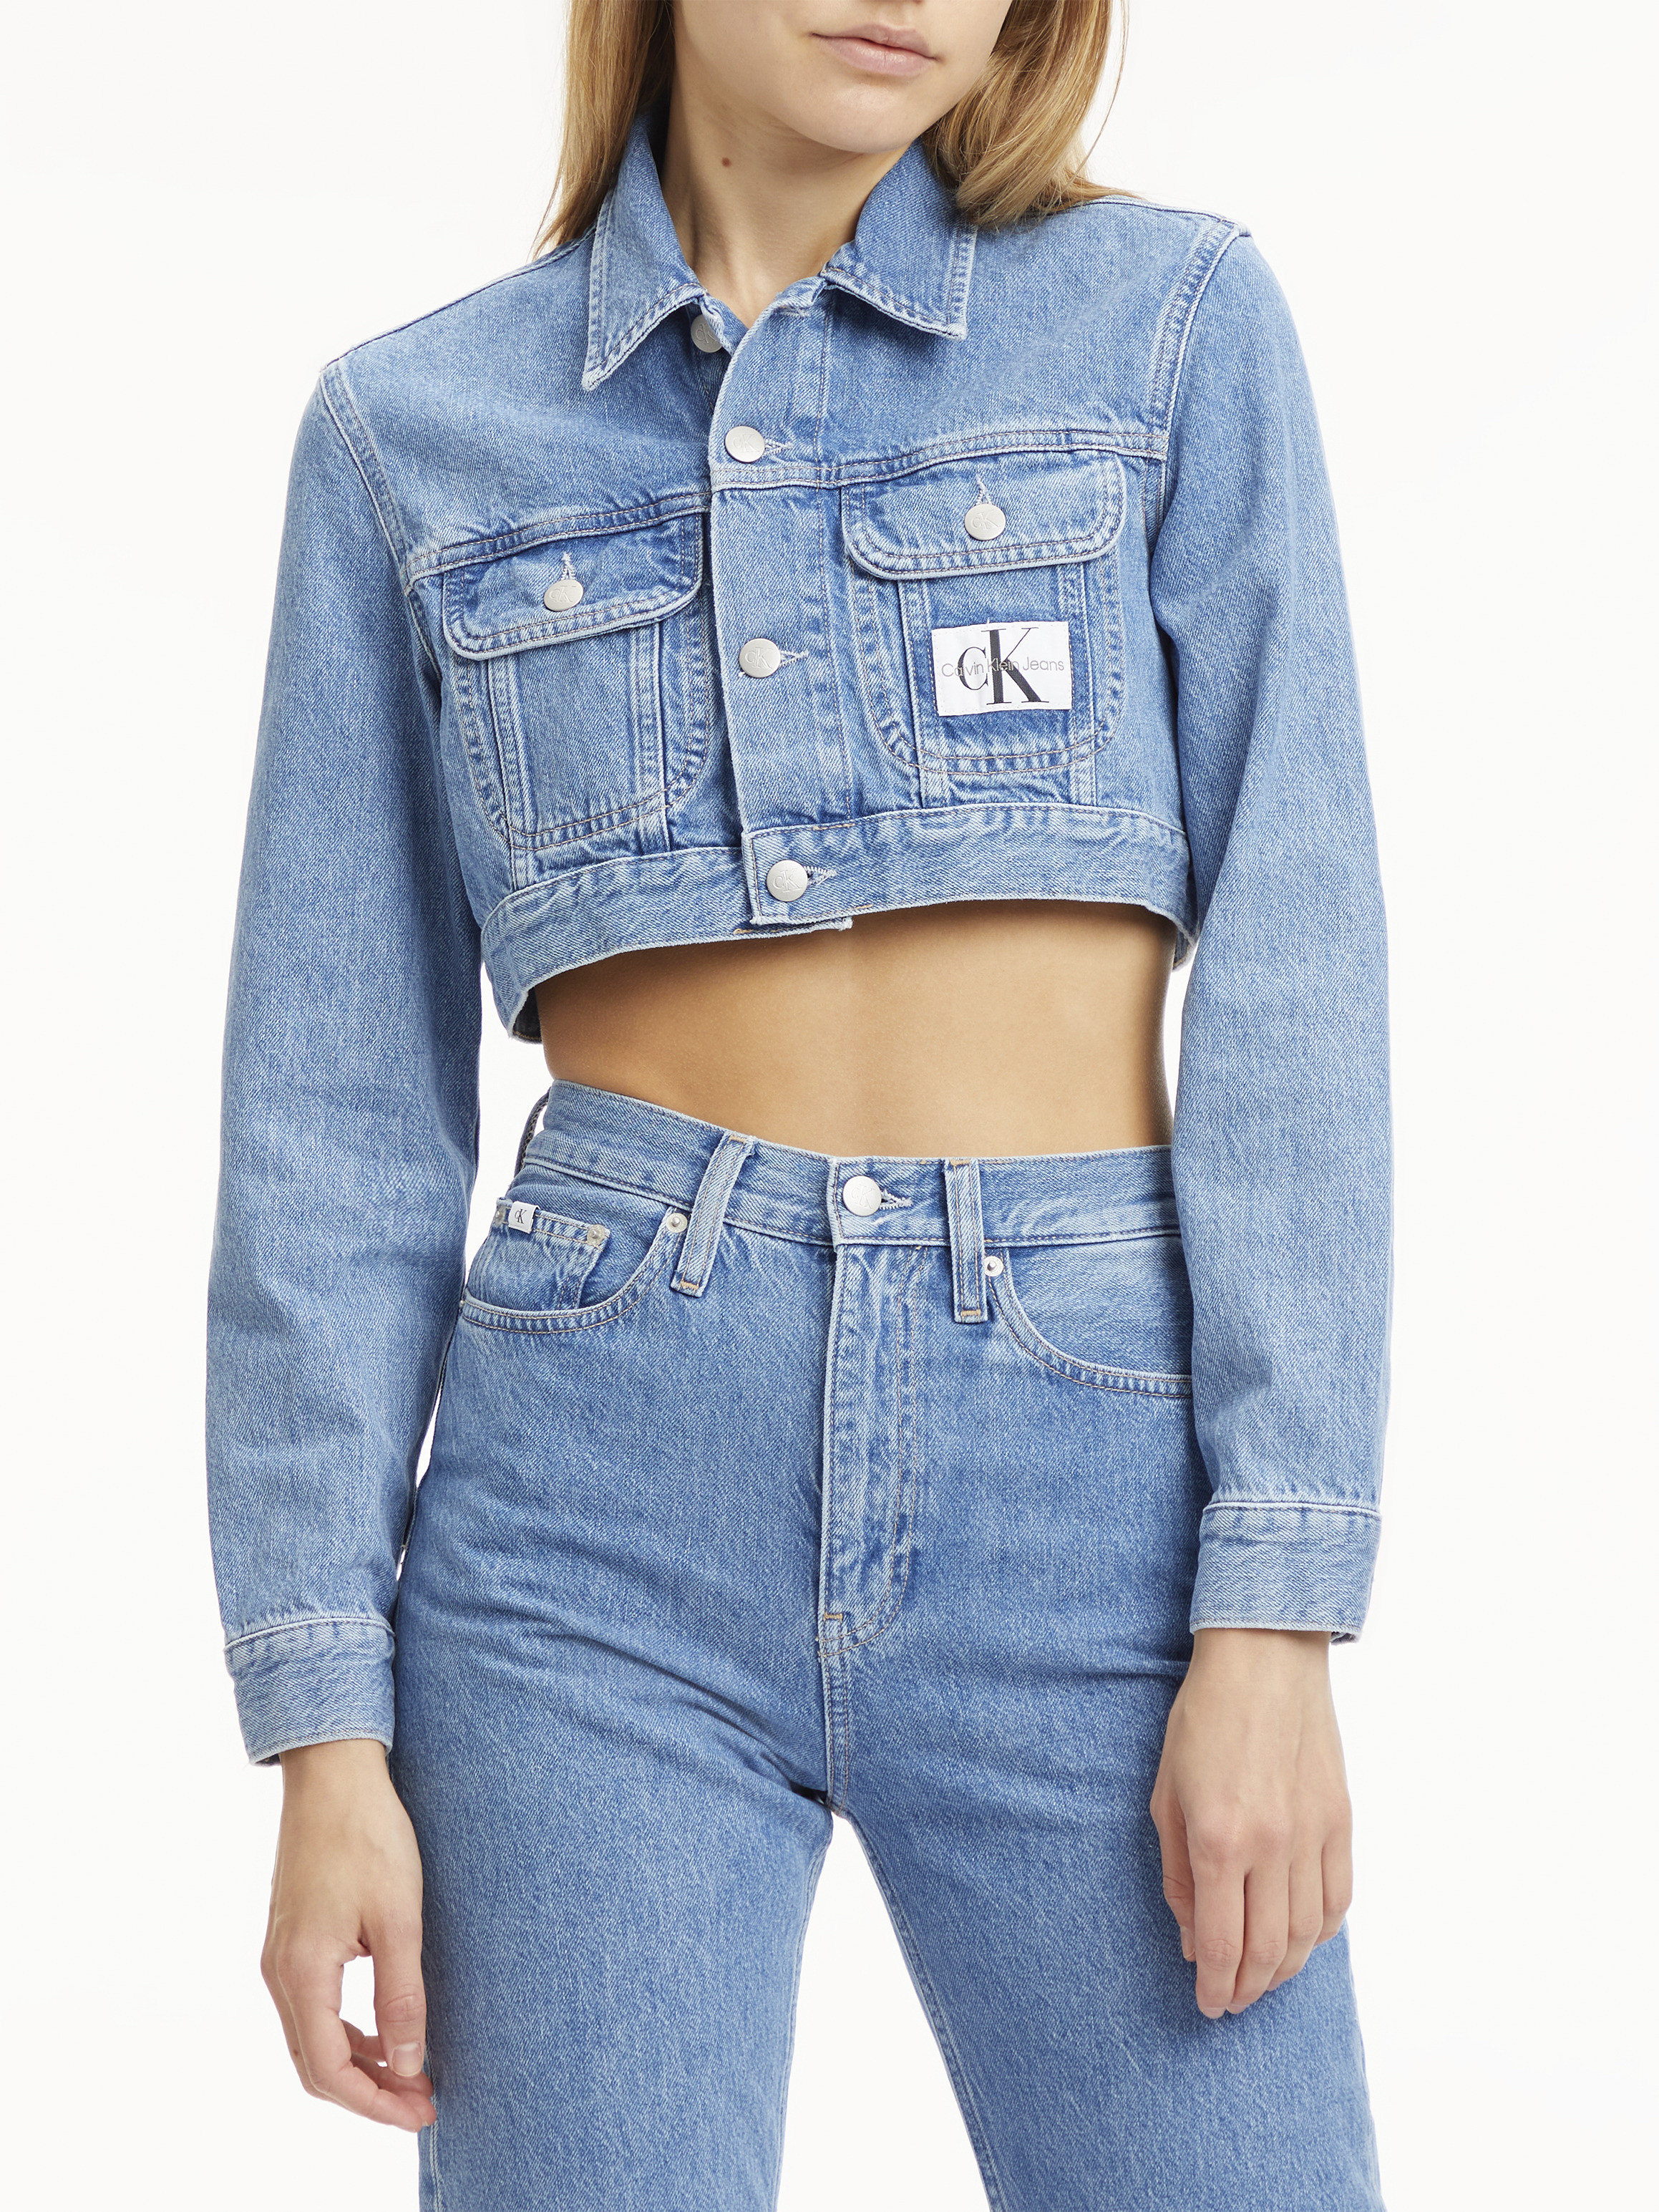 Calvin Klein Jeans - Cropped denim jacket, Denim, large image number 2